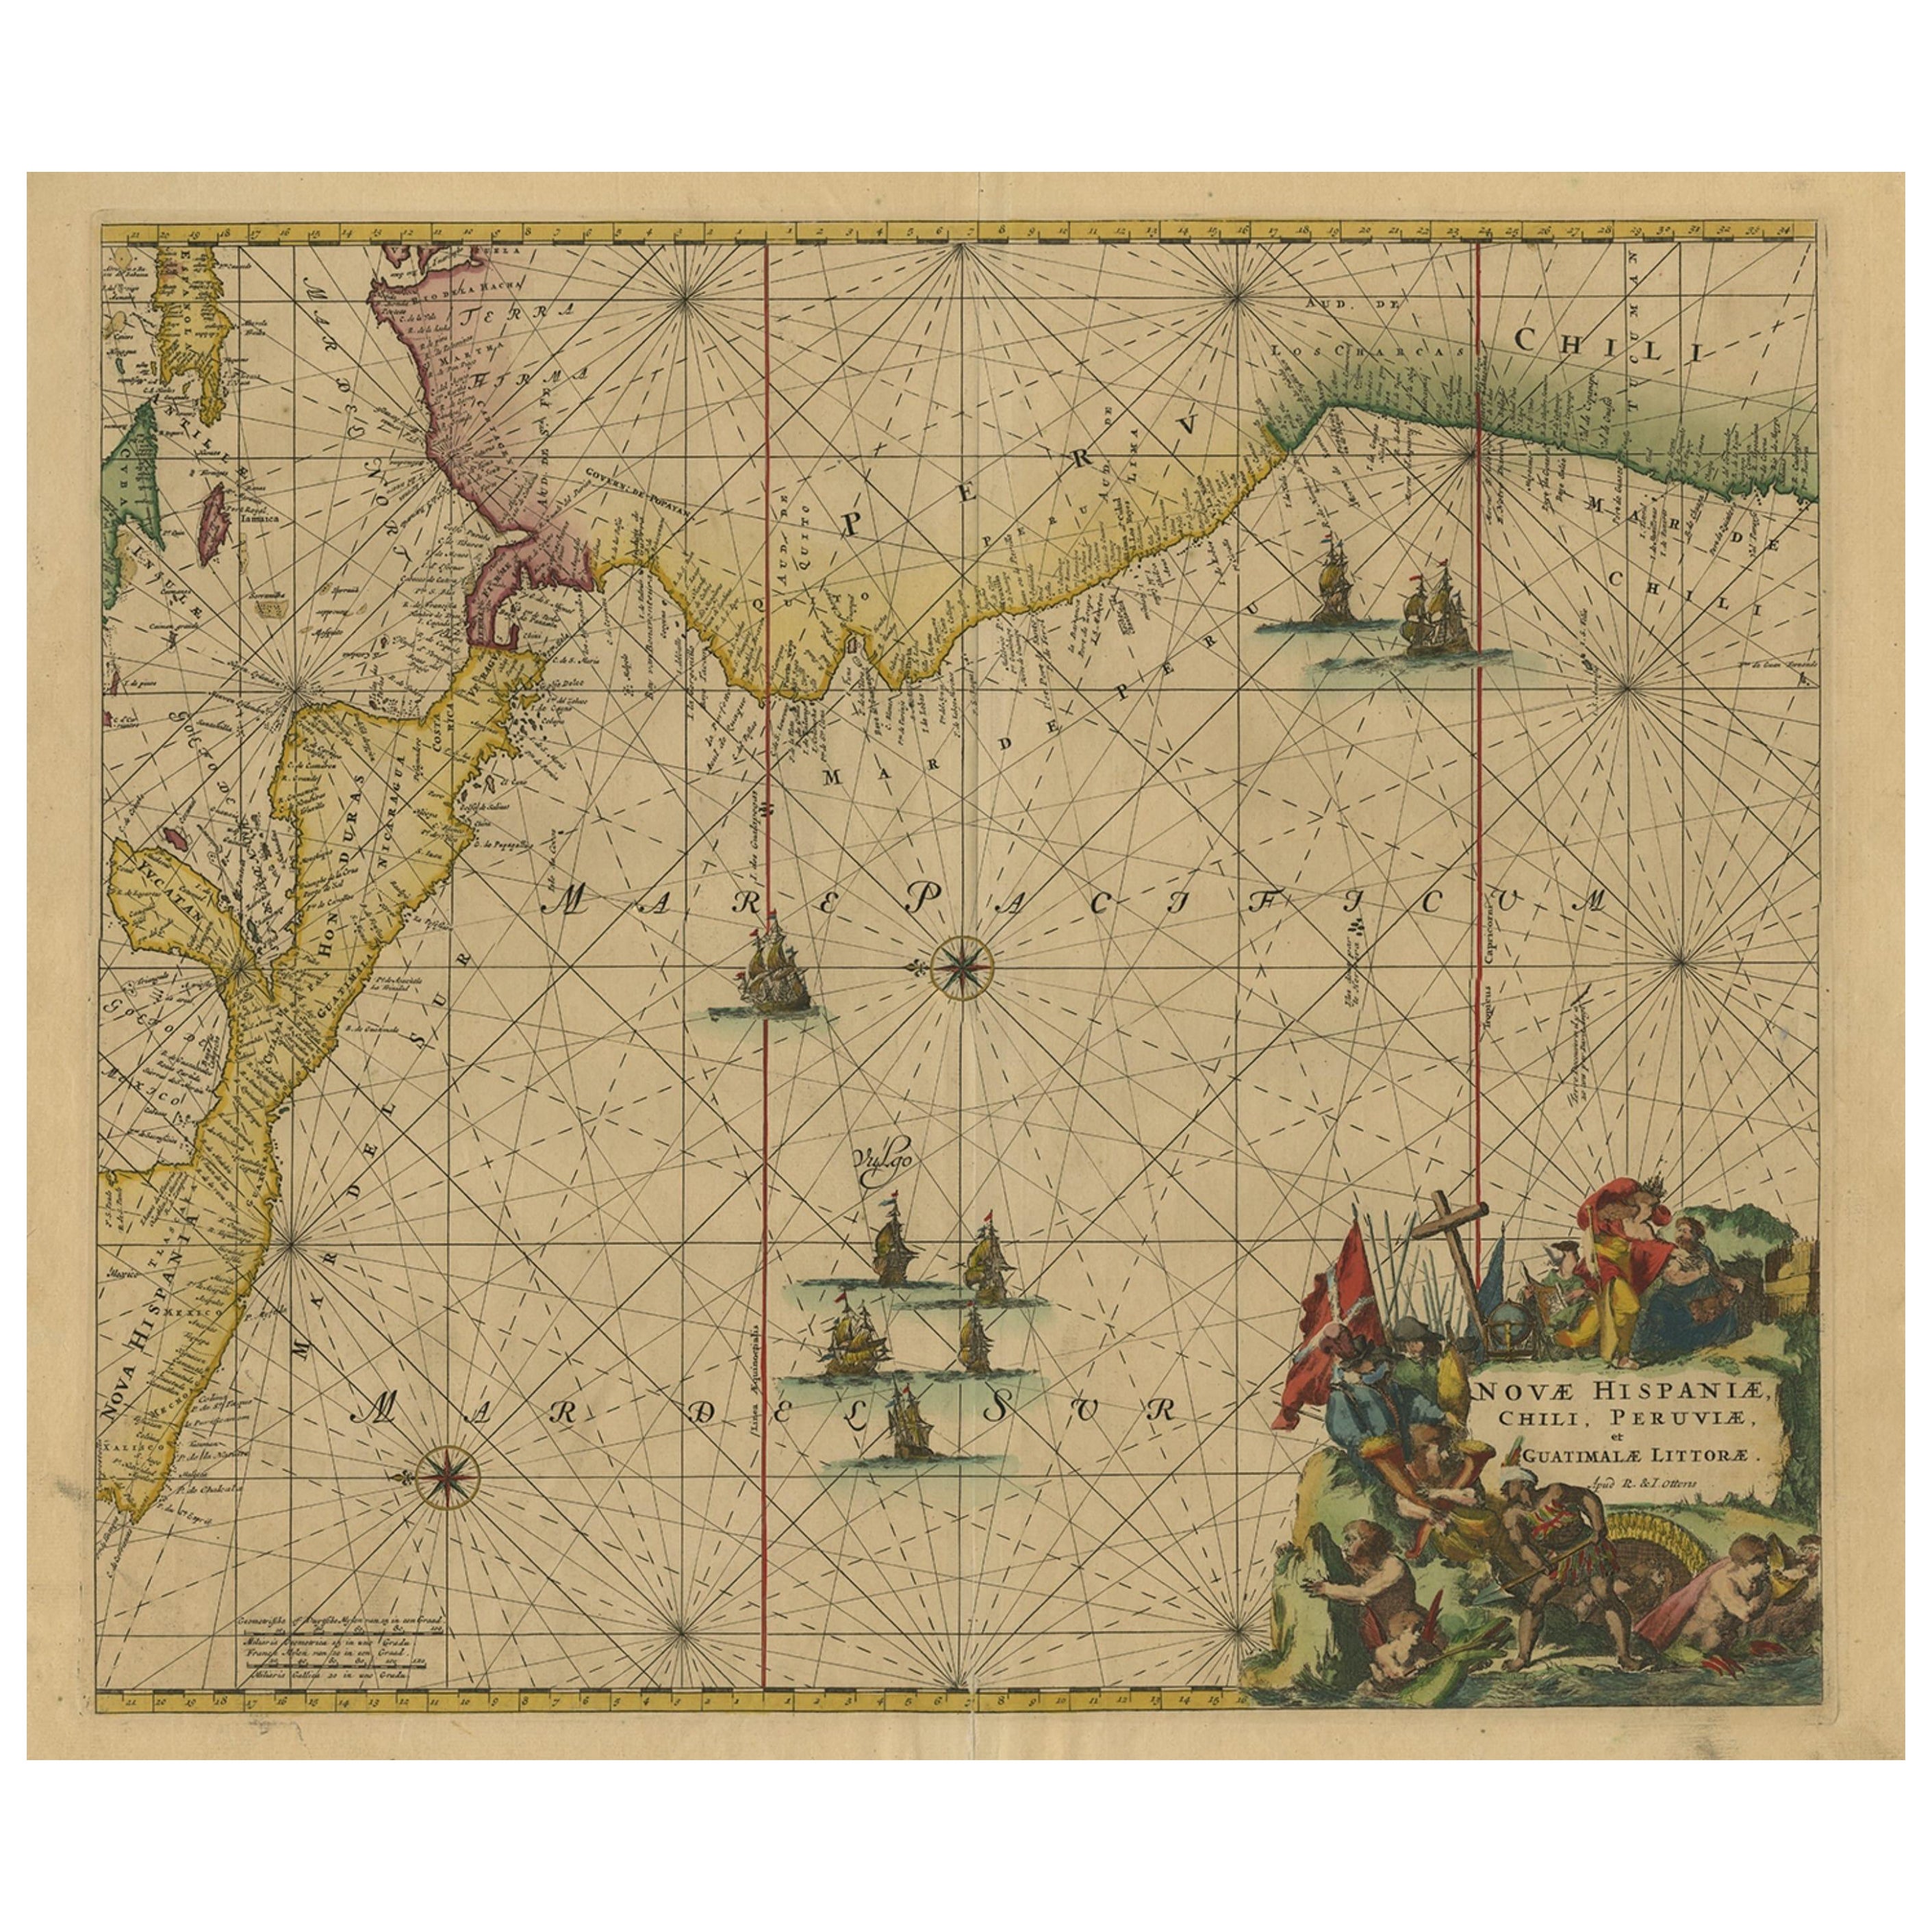 Carte des mers d'Amérique centrale et de la côte nord-ouest de l'Amérique du Sud, vers 1745